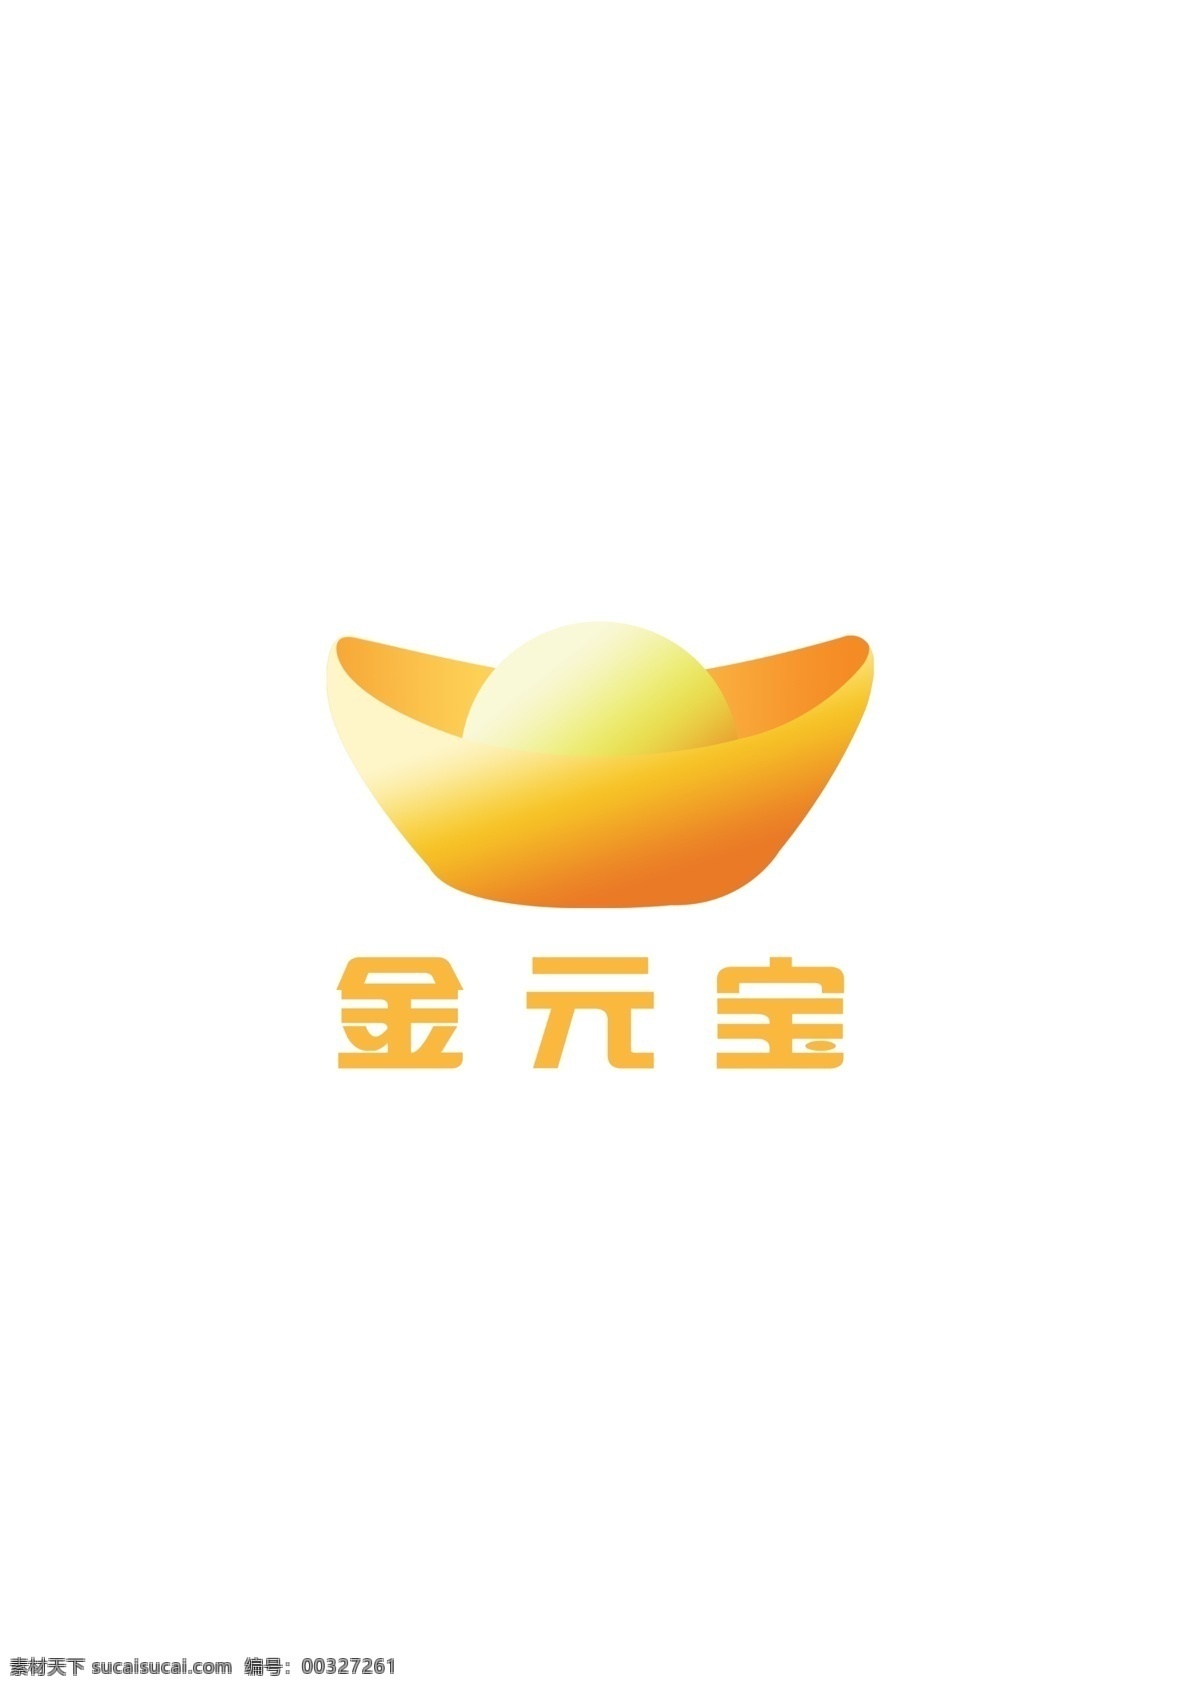 金元宝 logo 元宝 钱币 财富 金融 标志 商务金融 金融货币